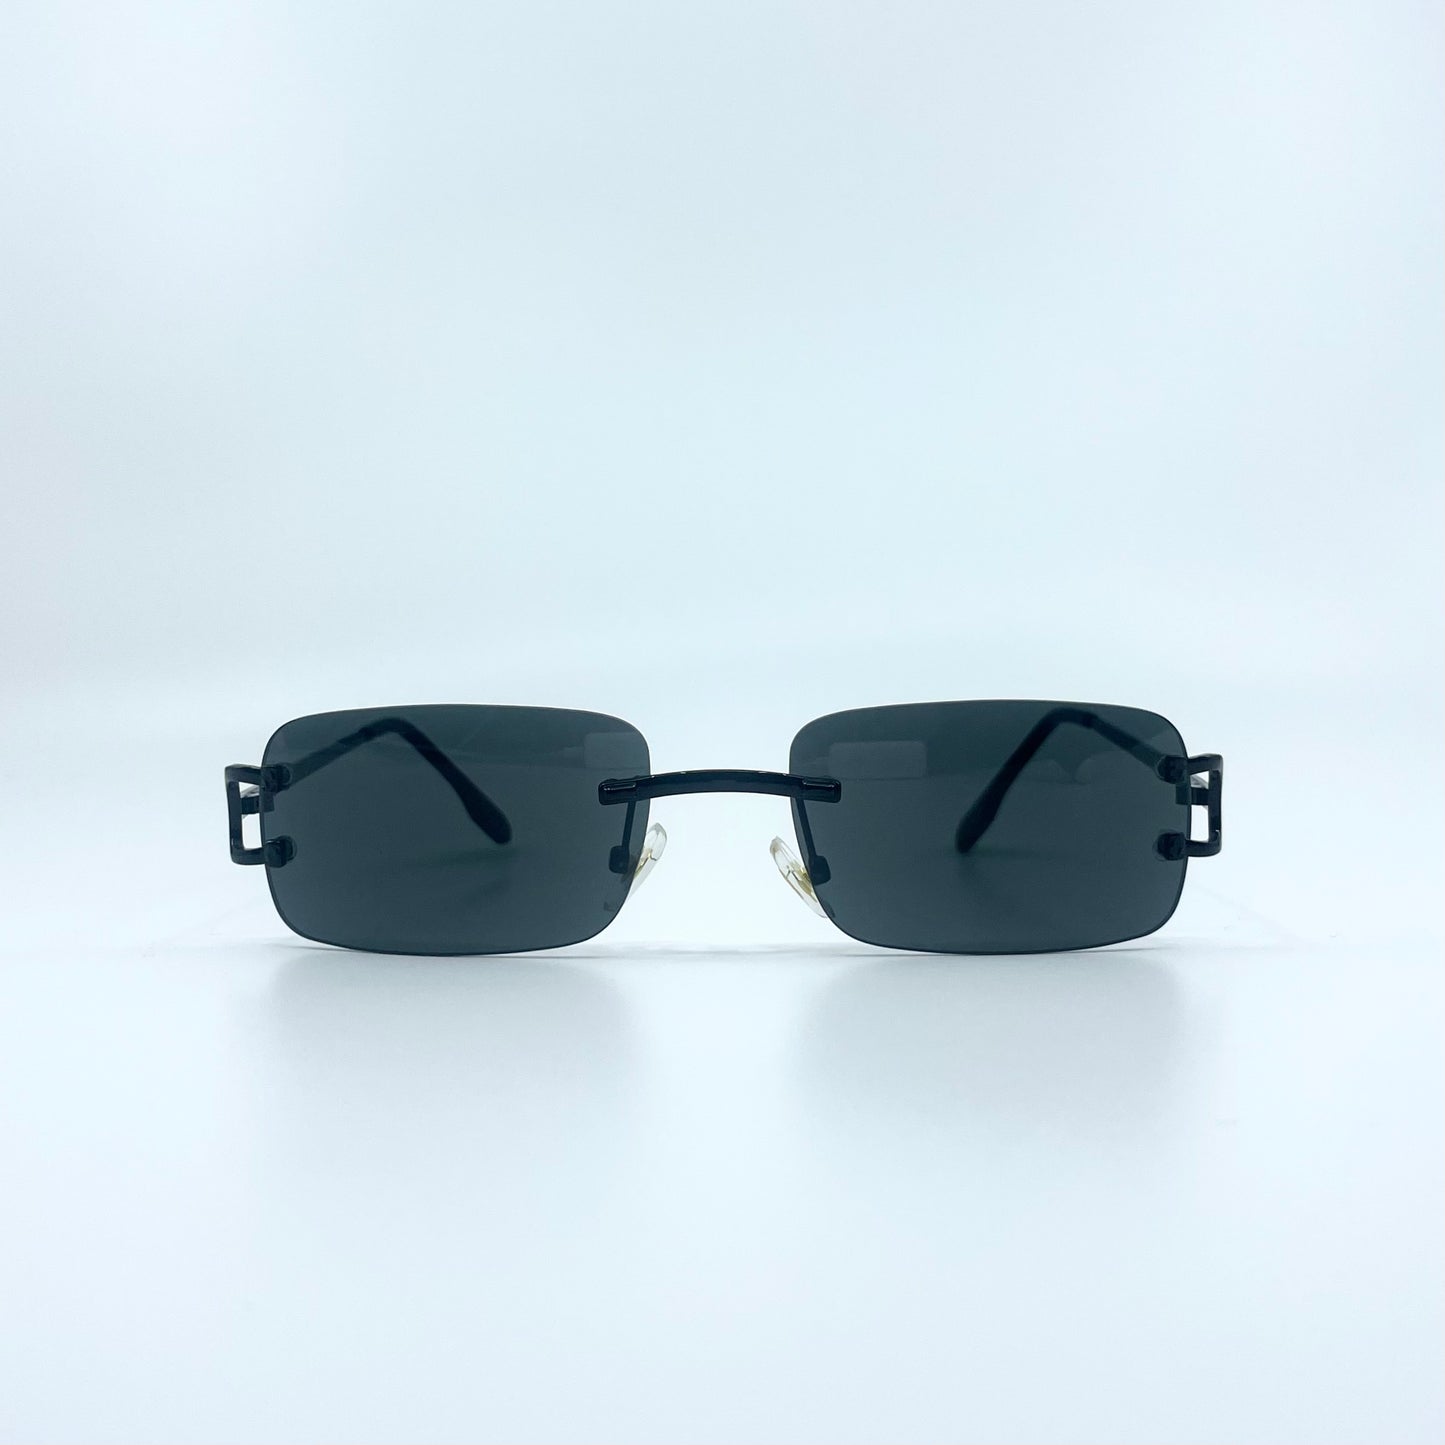 "Miami" Sunglasses